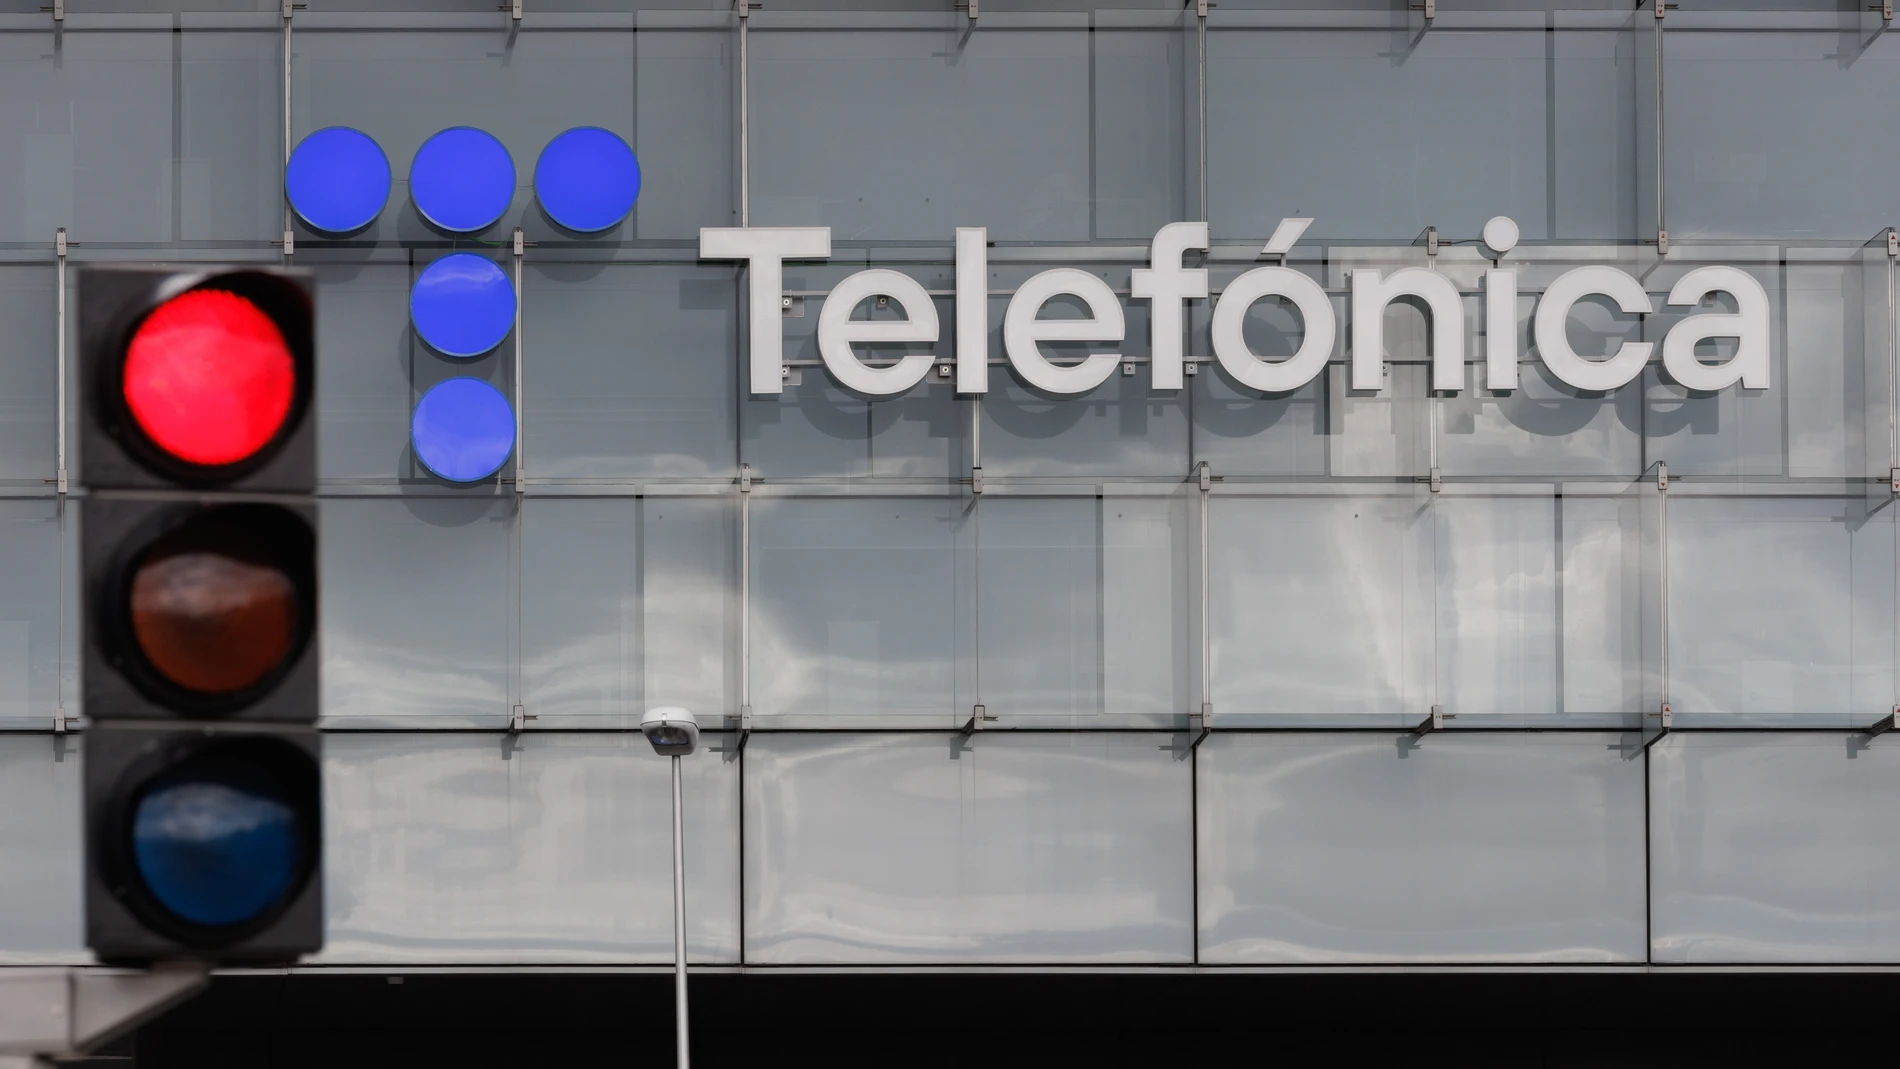 Economía.- Telefónica se adjudica por 38,7 millones el acuerdo para la red de telecomunicaciones vía satélite de Defensa